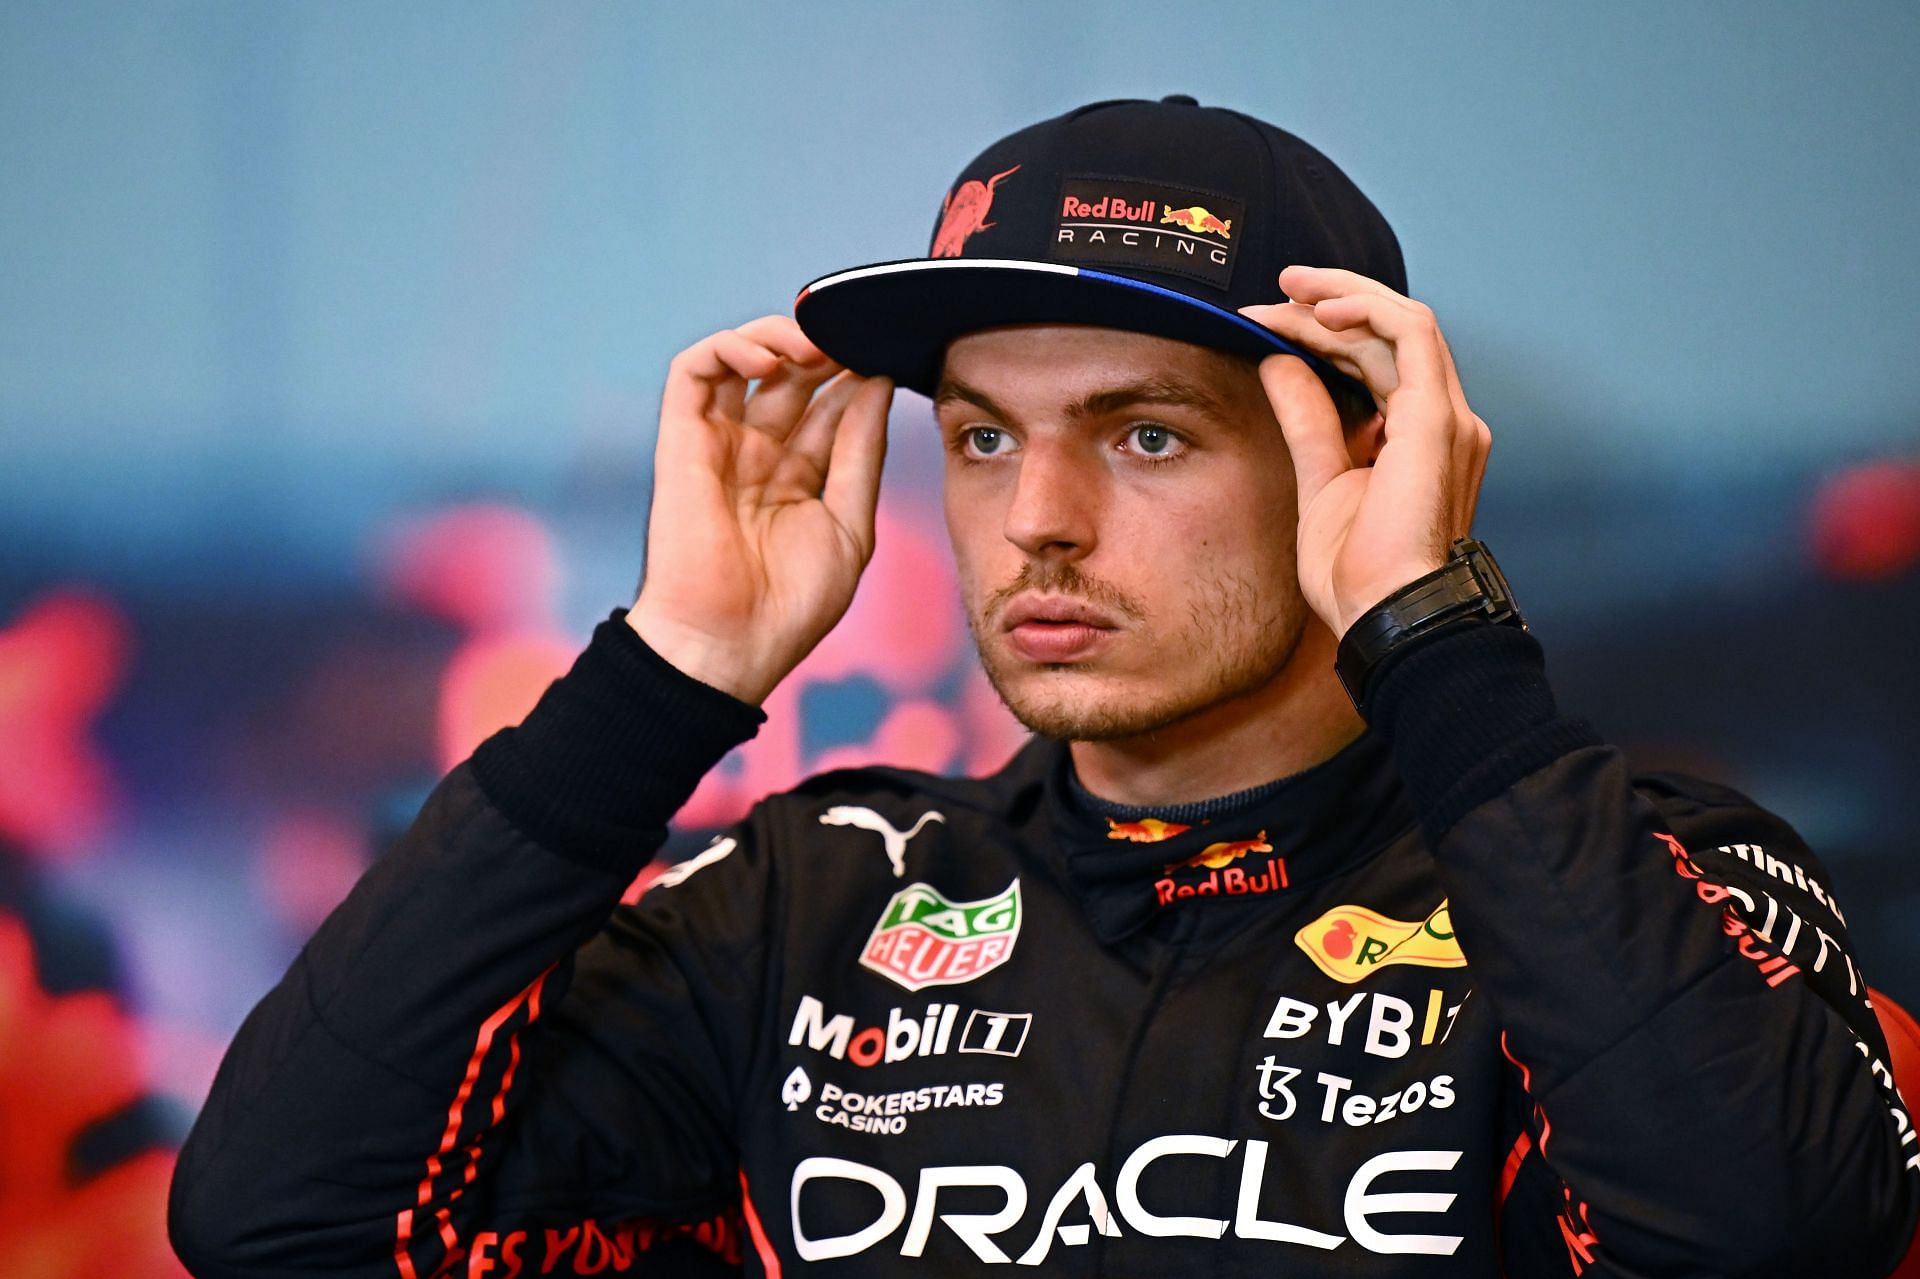 Max Verstappen at the F1 Grand Prix of Monaco